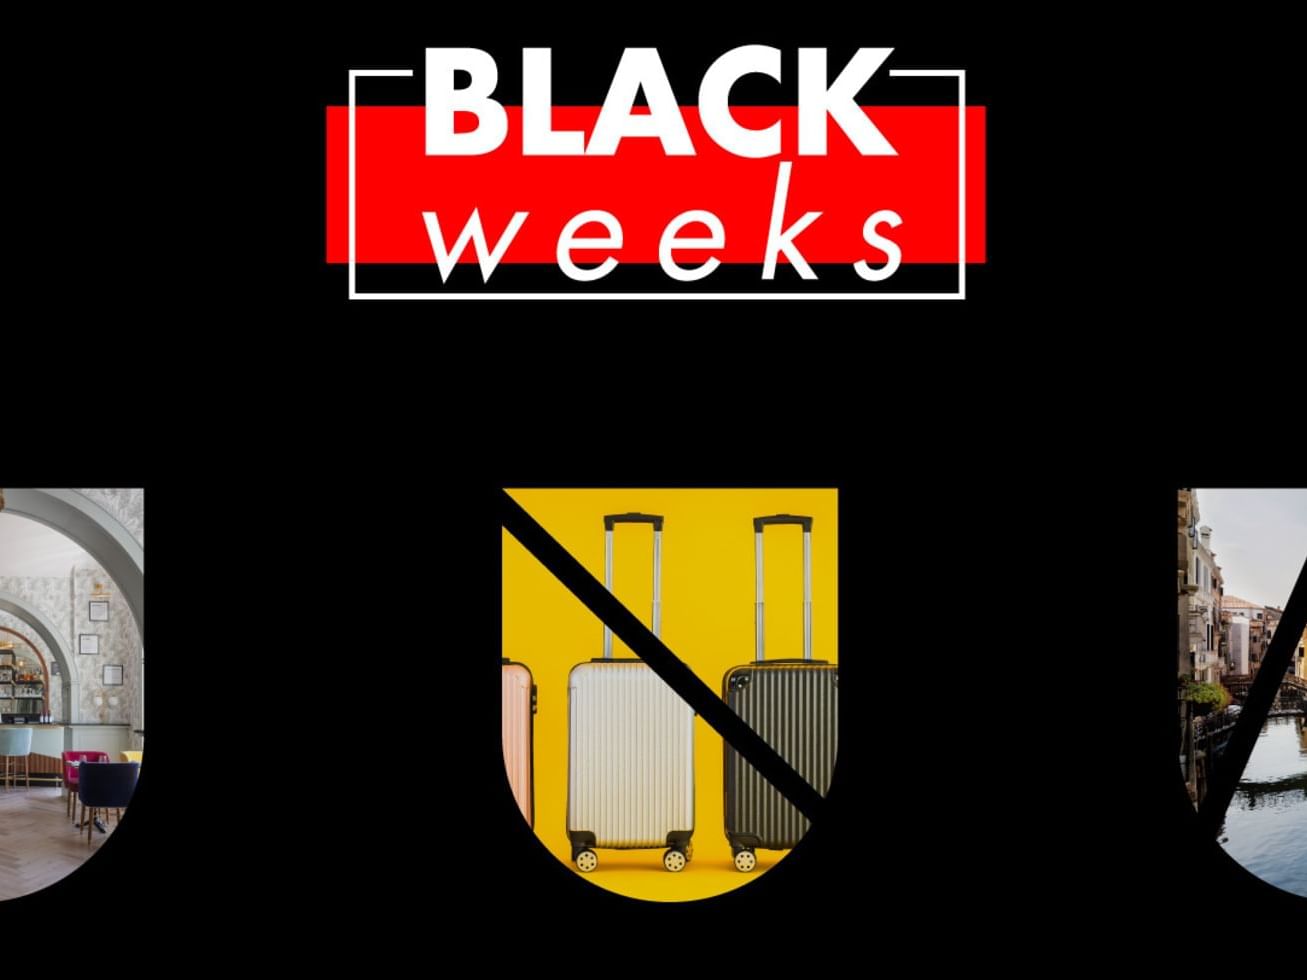 Black Friday Black Weeks